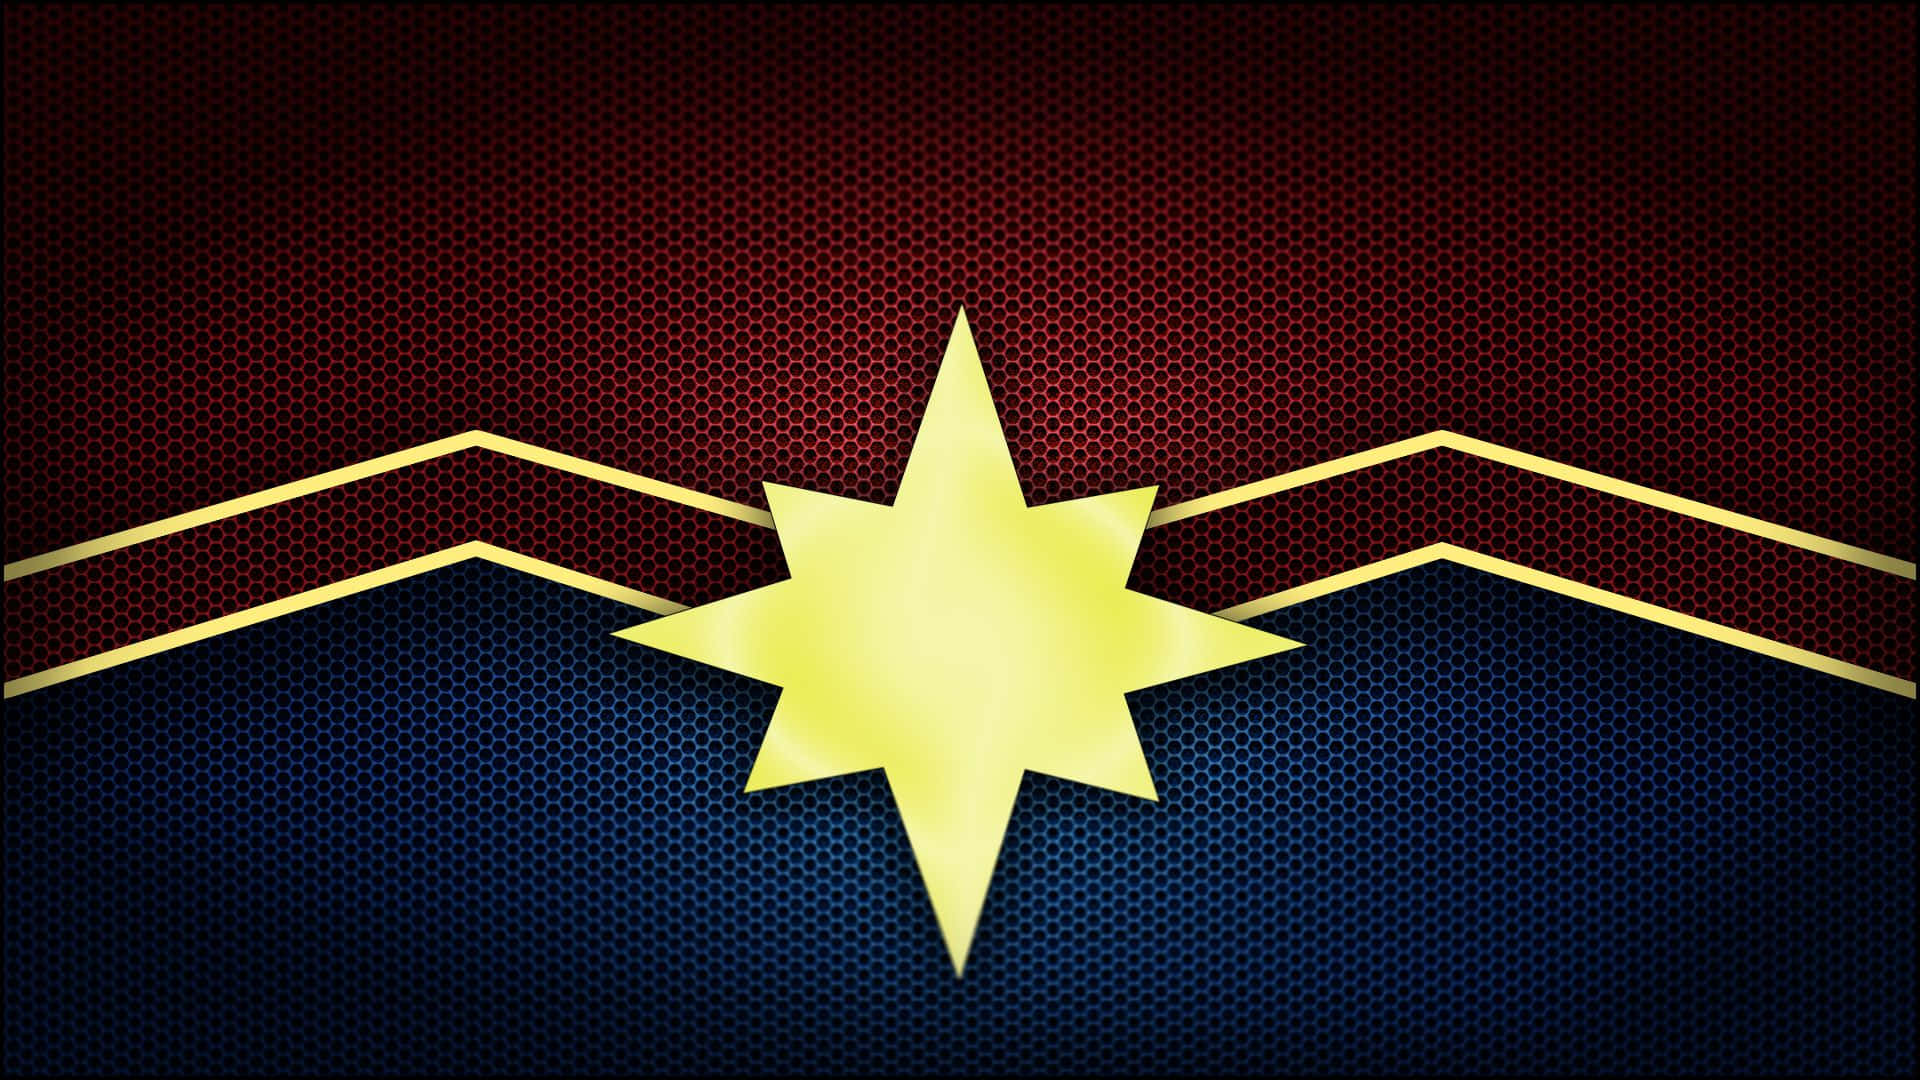 Captain Marvel Inspired Background